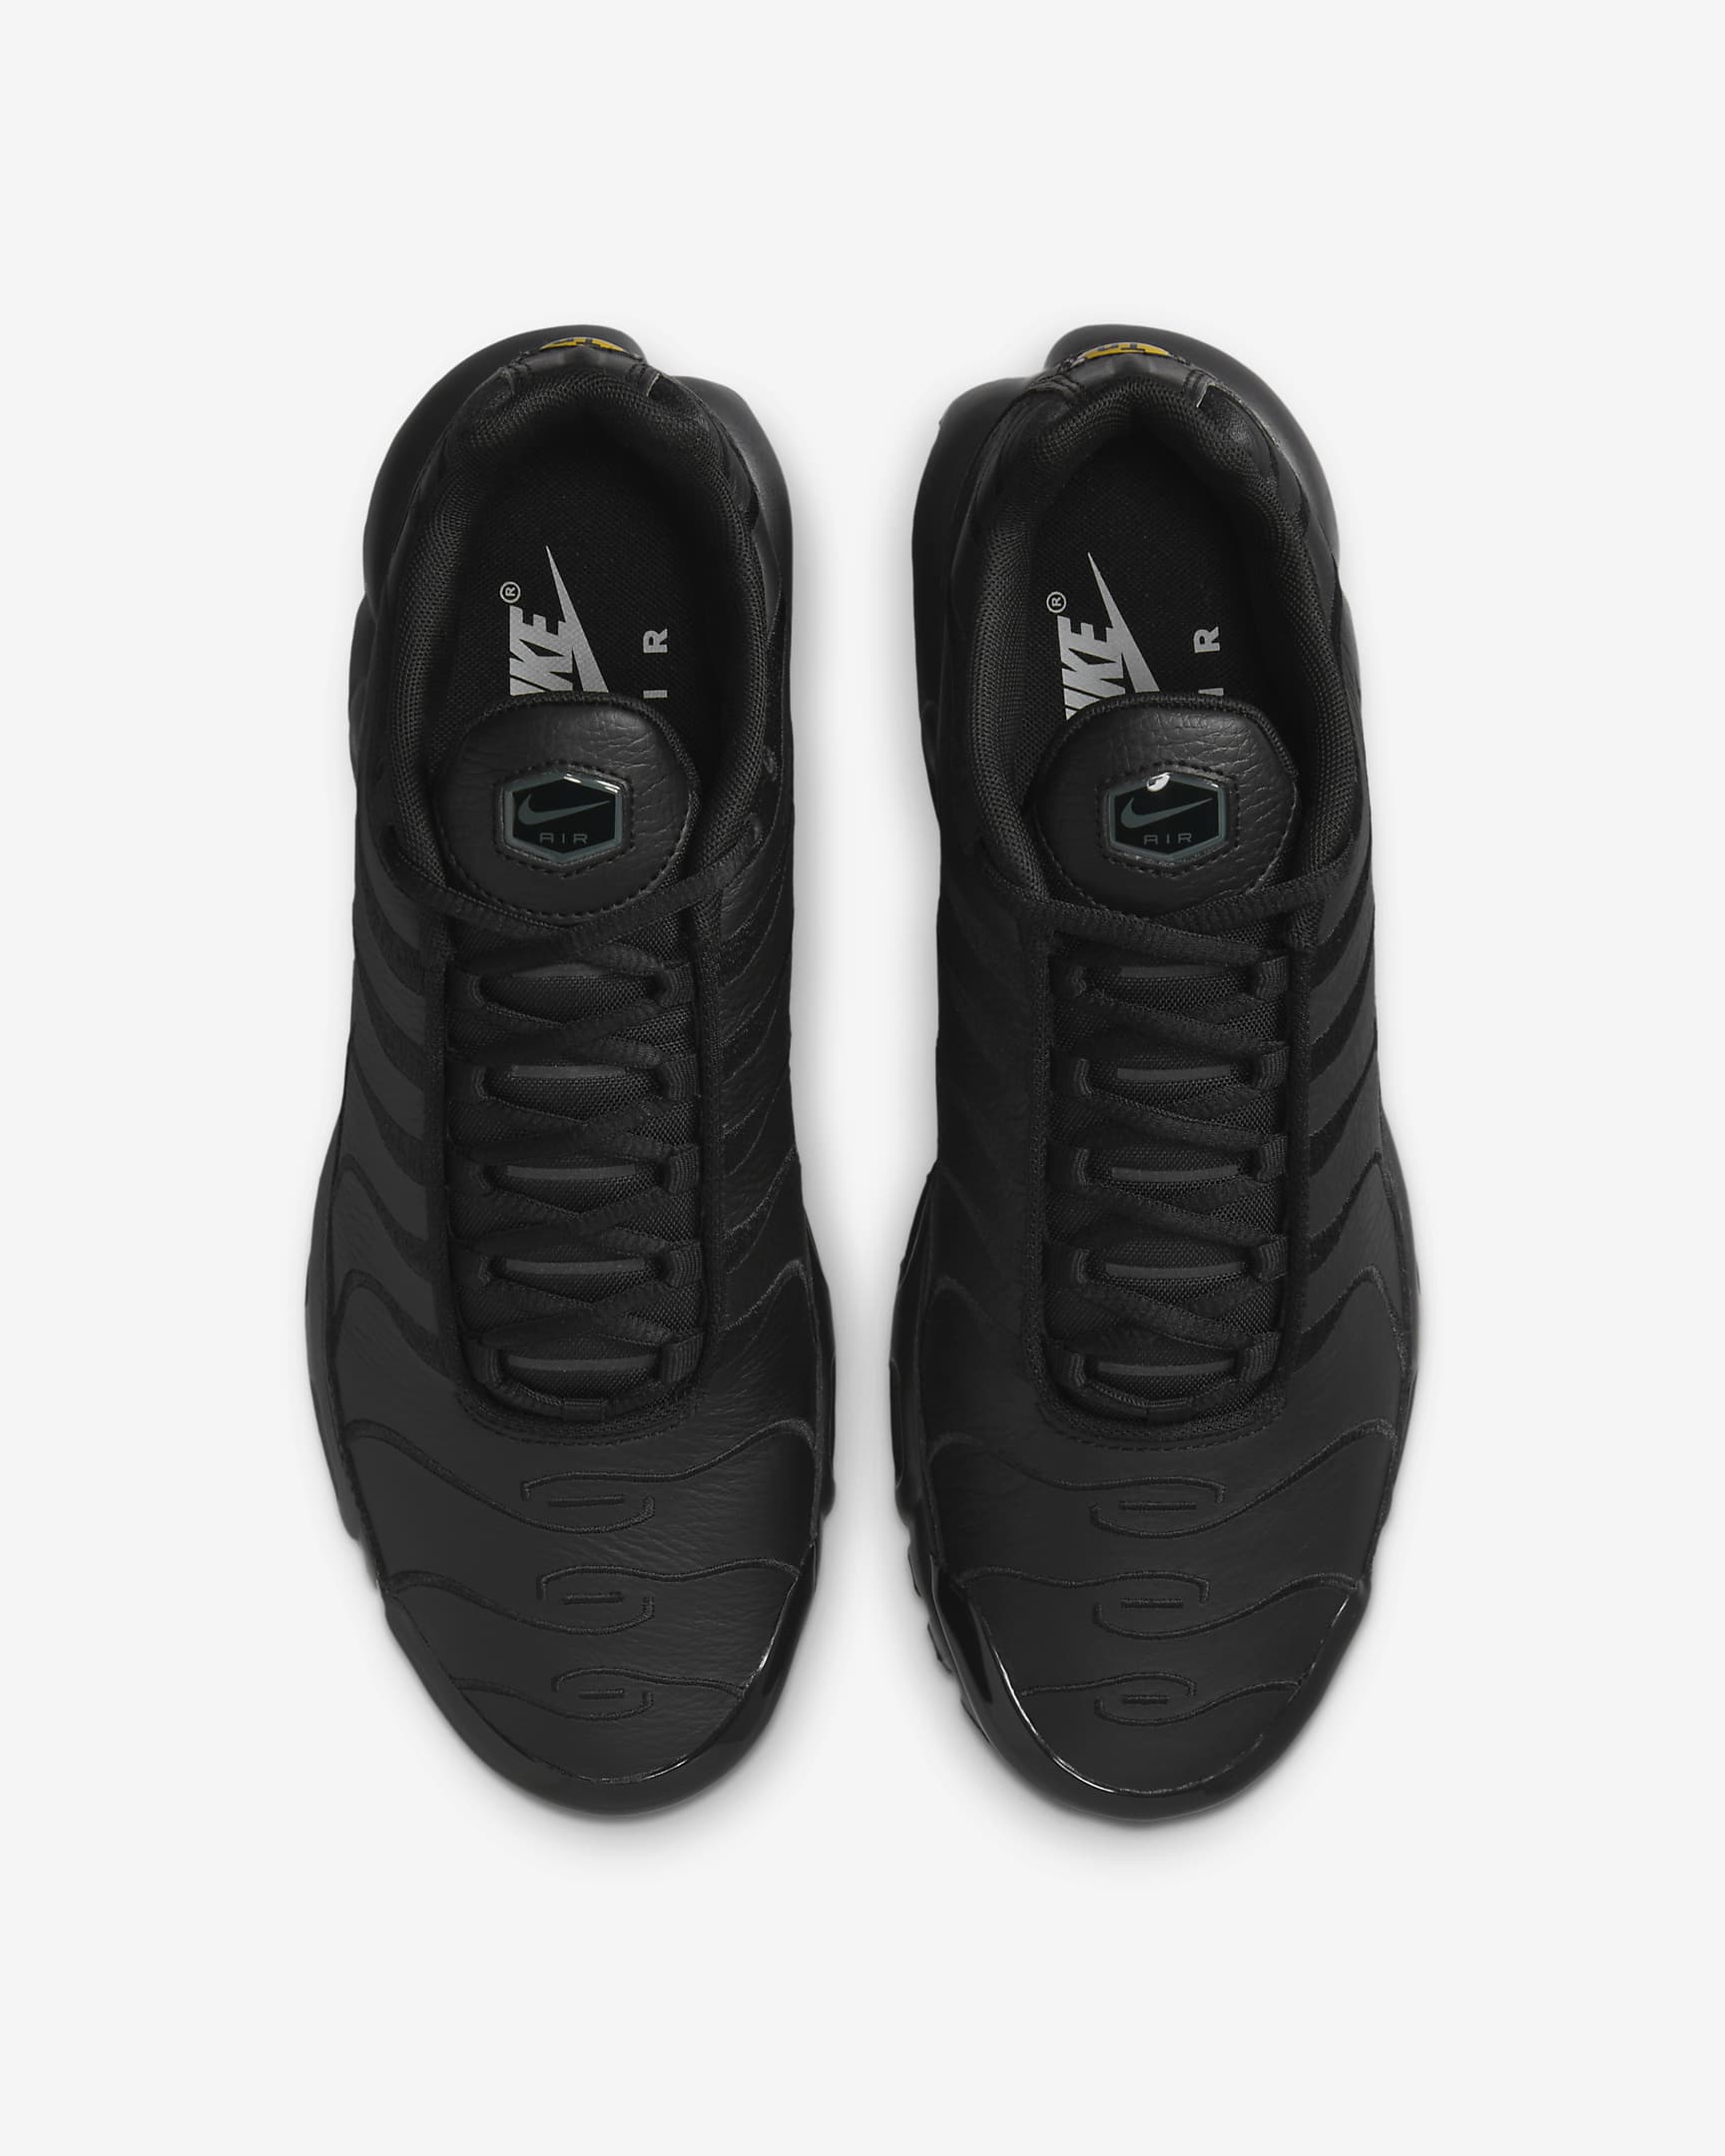 Nike Air Max Plus Men's Shoe - Black/Black/Black